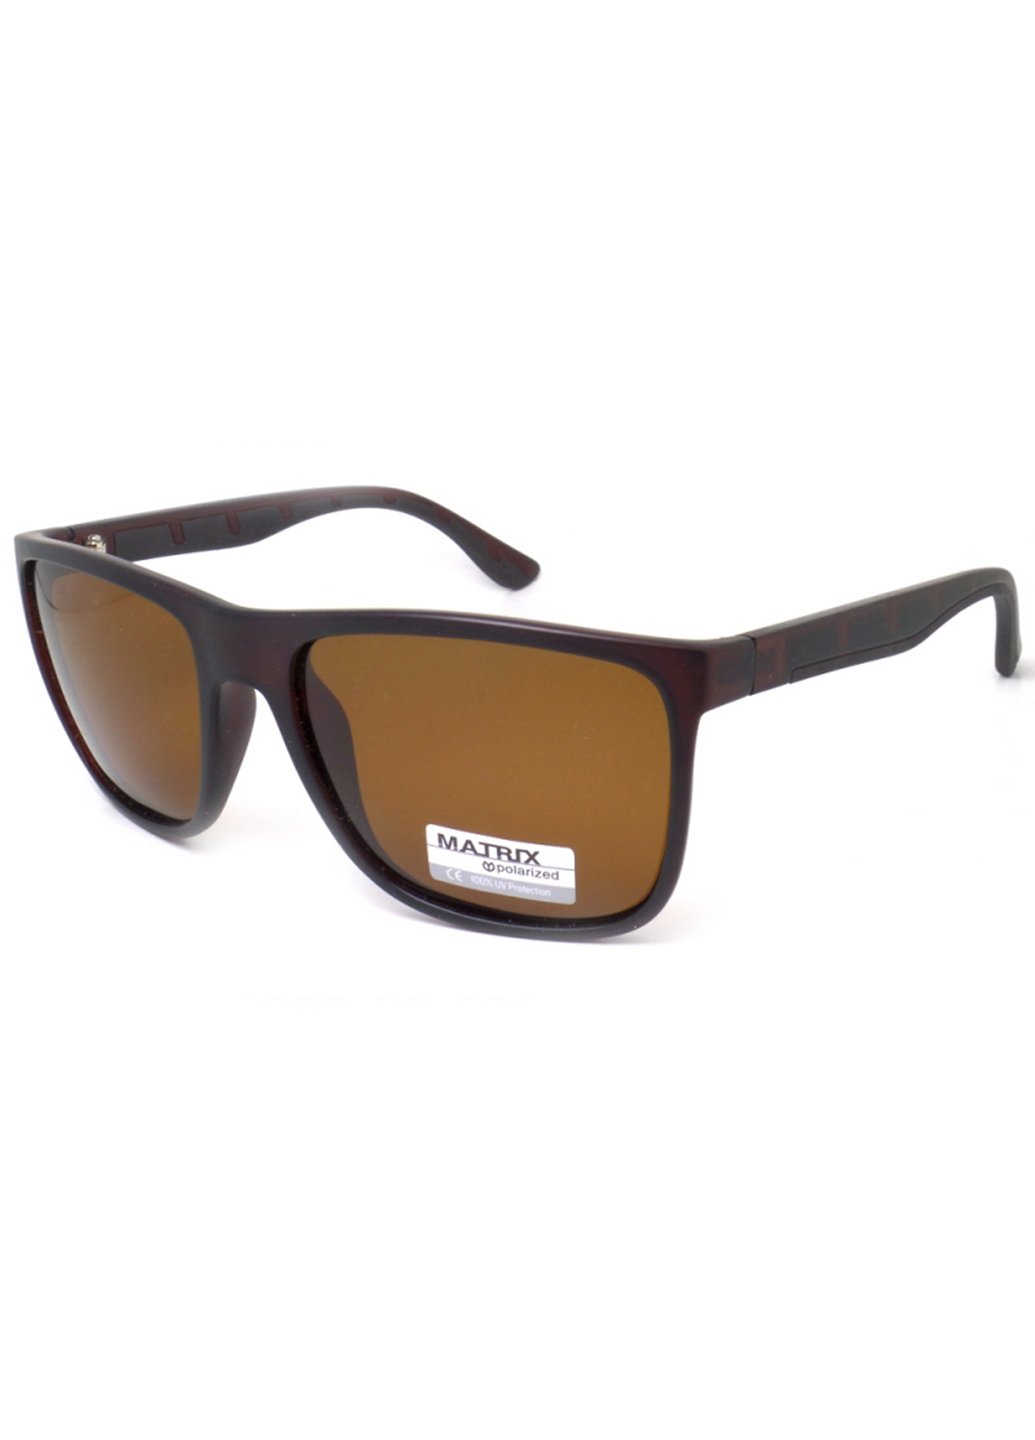 Купить Коричневые мужские солнцезащитные очки Matrix с поляризацией MT8571 111006 в интернет-магазине